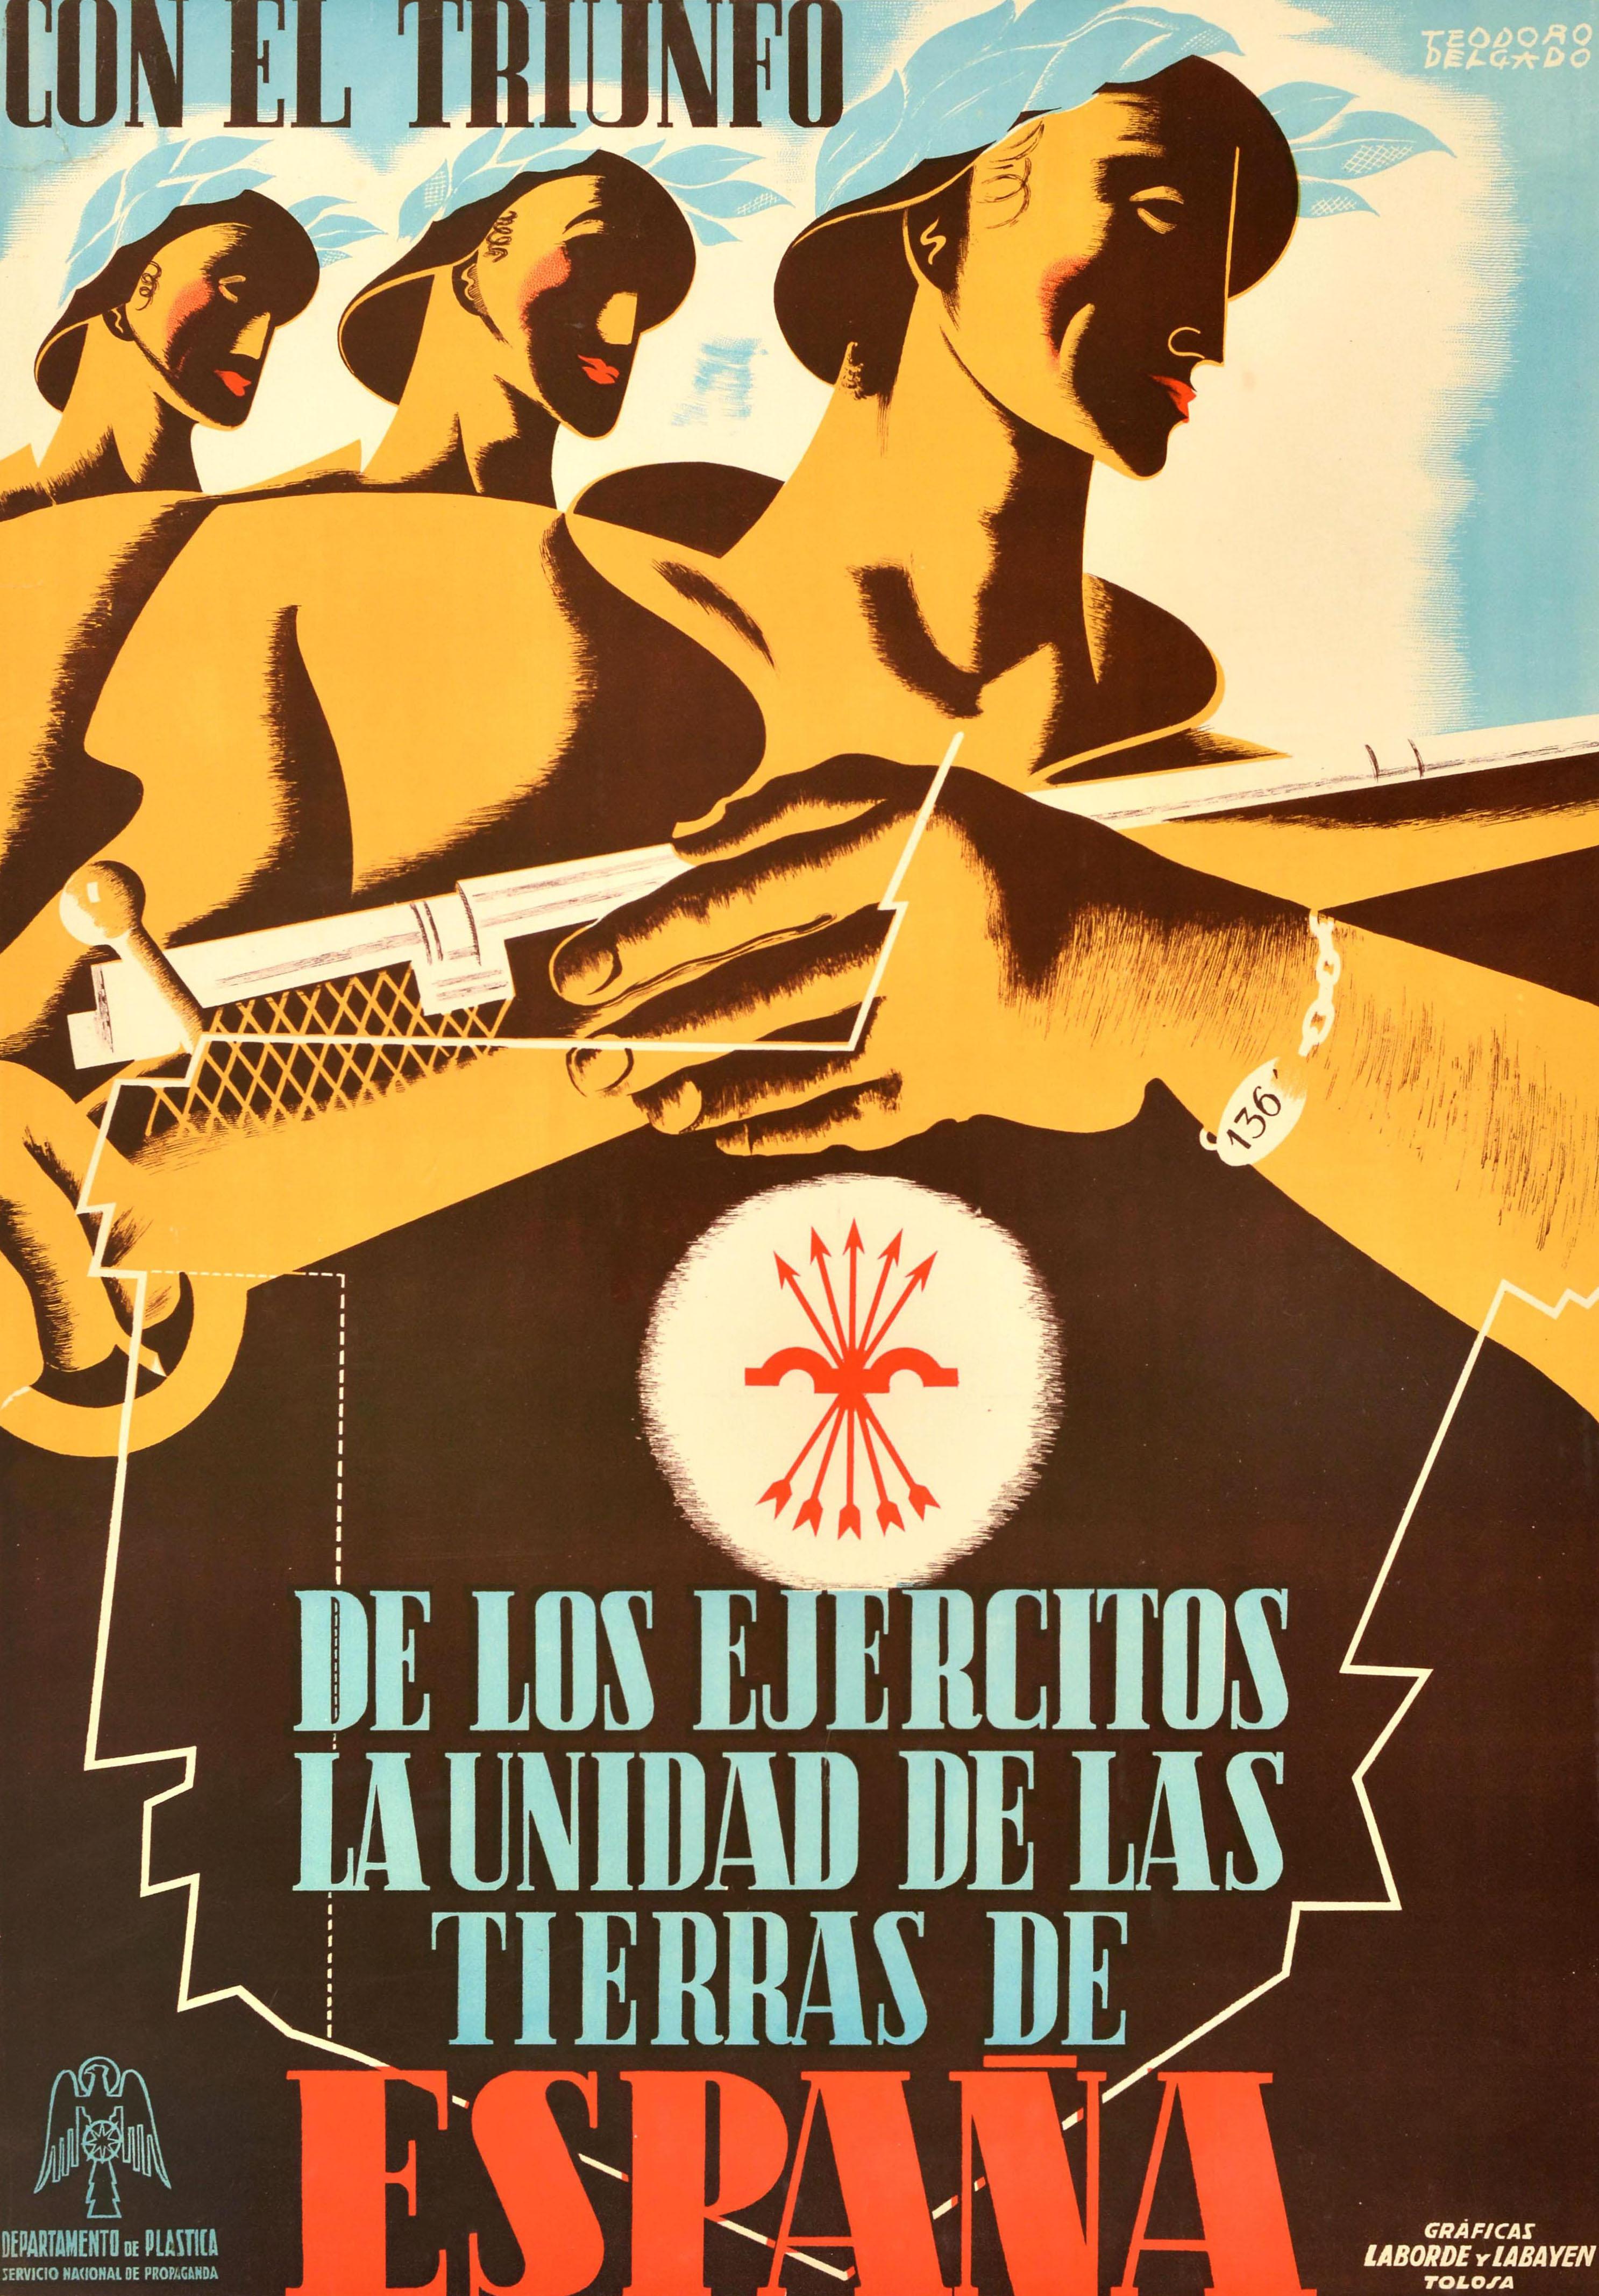 Original Vintage Spanish Civil War Poster Con El Triunfo Triumph Of Armies Unity - Print by Teodoro Delgado